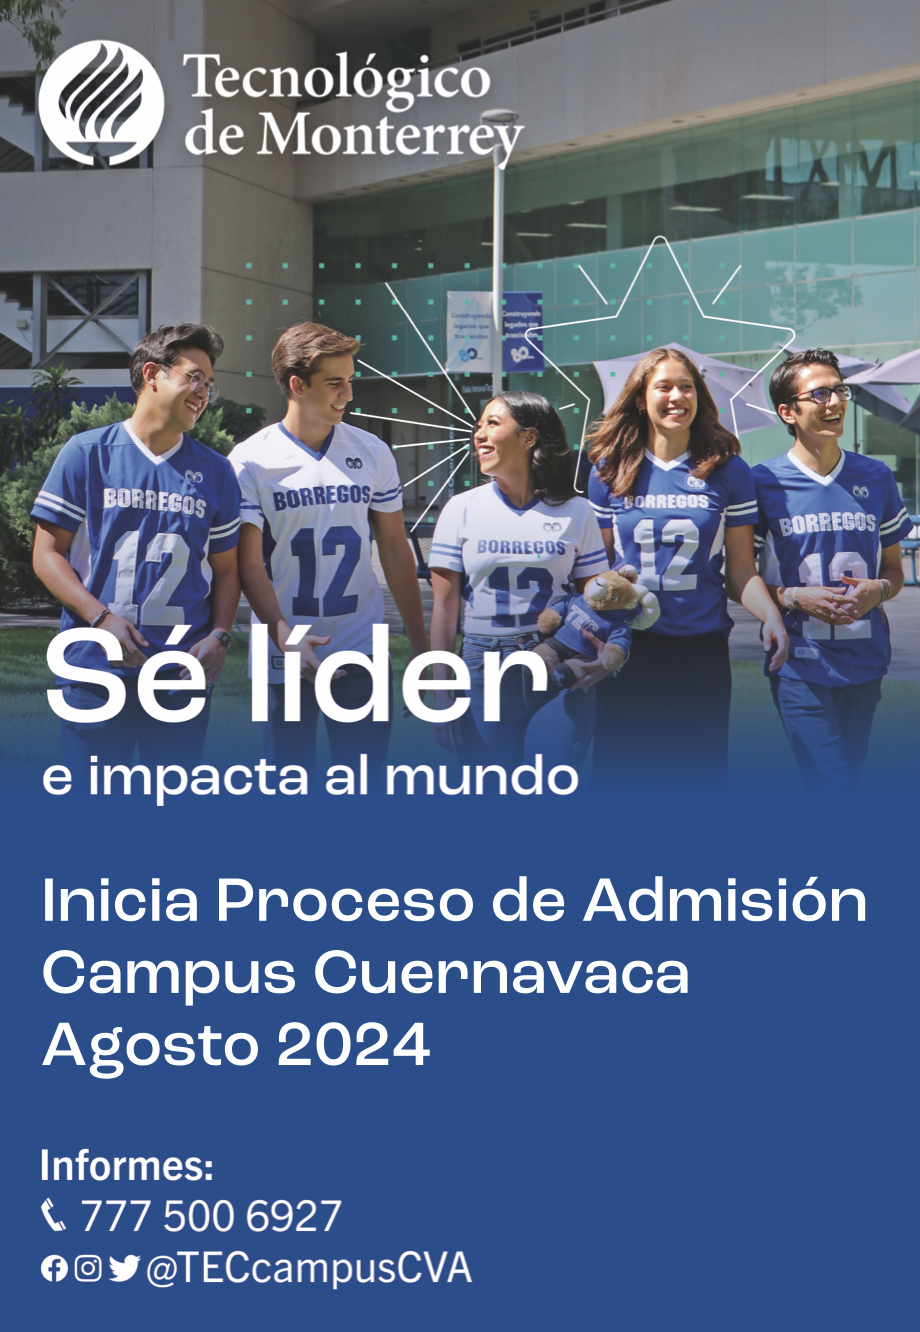 Inicia tu proceso de Admision para el Tecnologico de Monterrey campus Cuernavaca